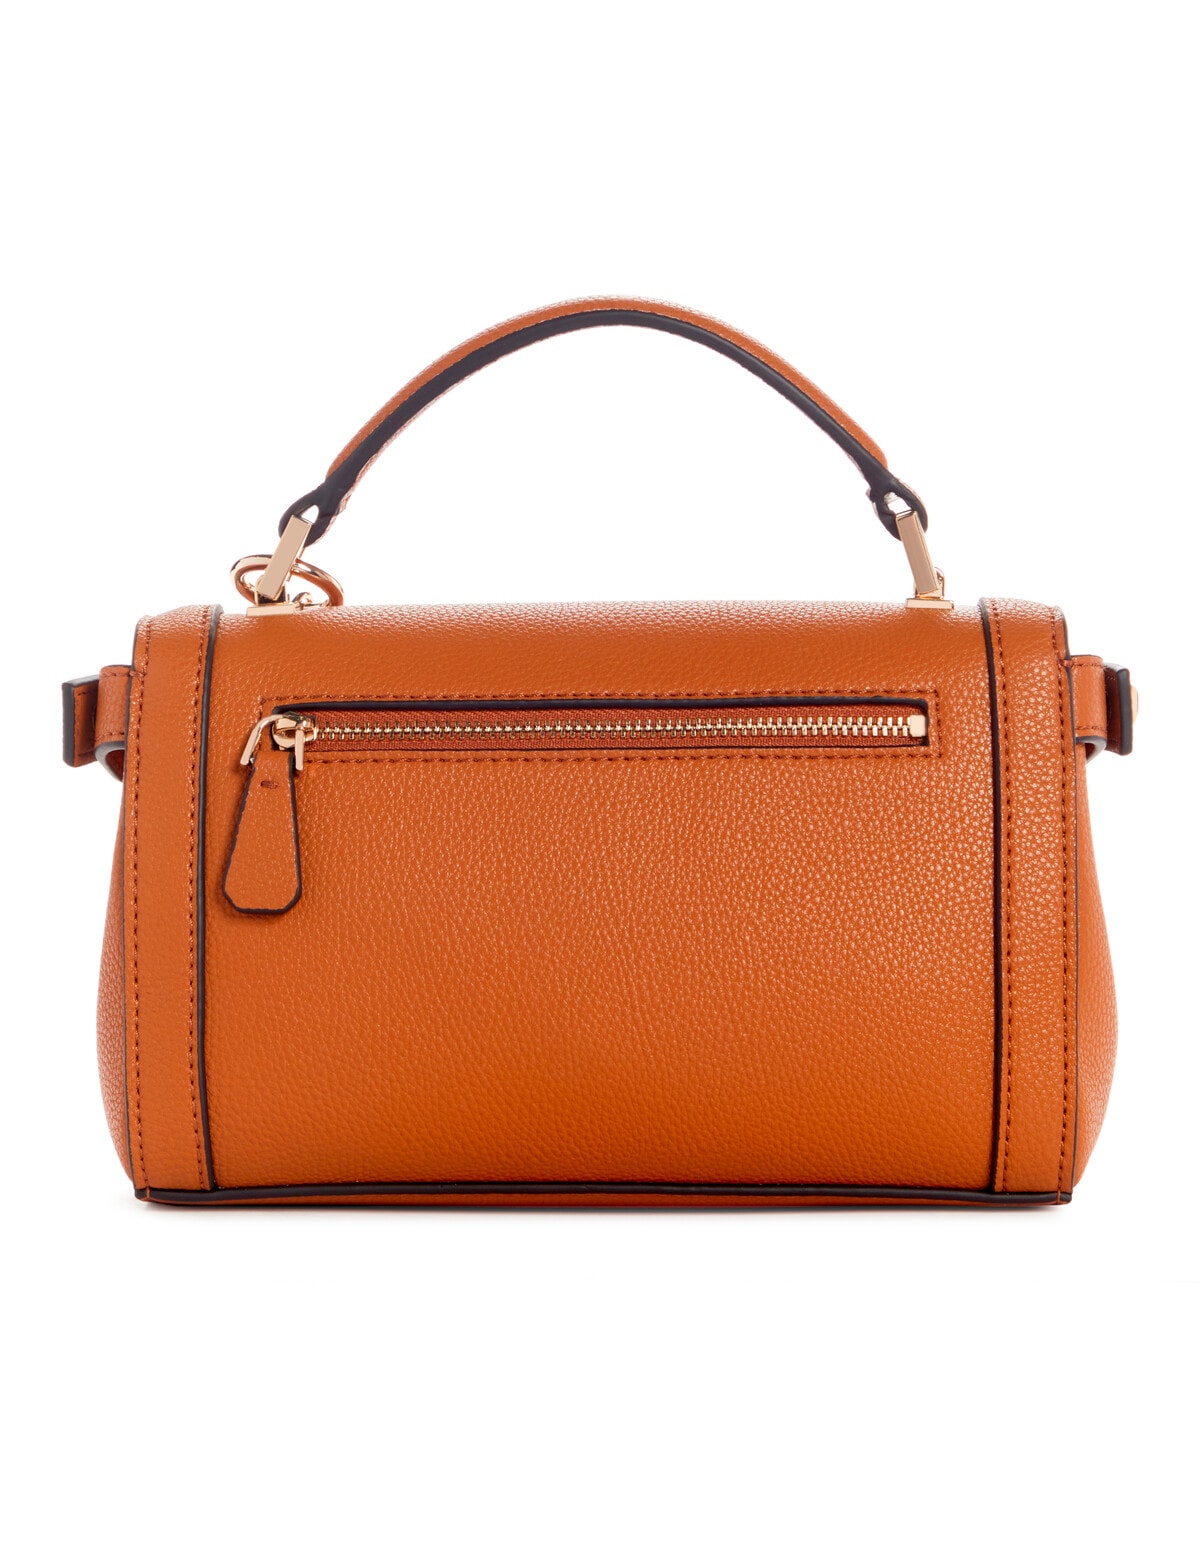 Guess Angy Top Handle Flap Bag, Cognac - Handbags